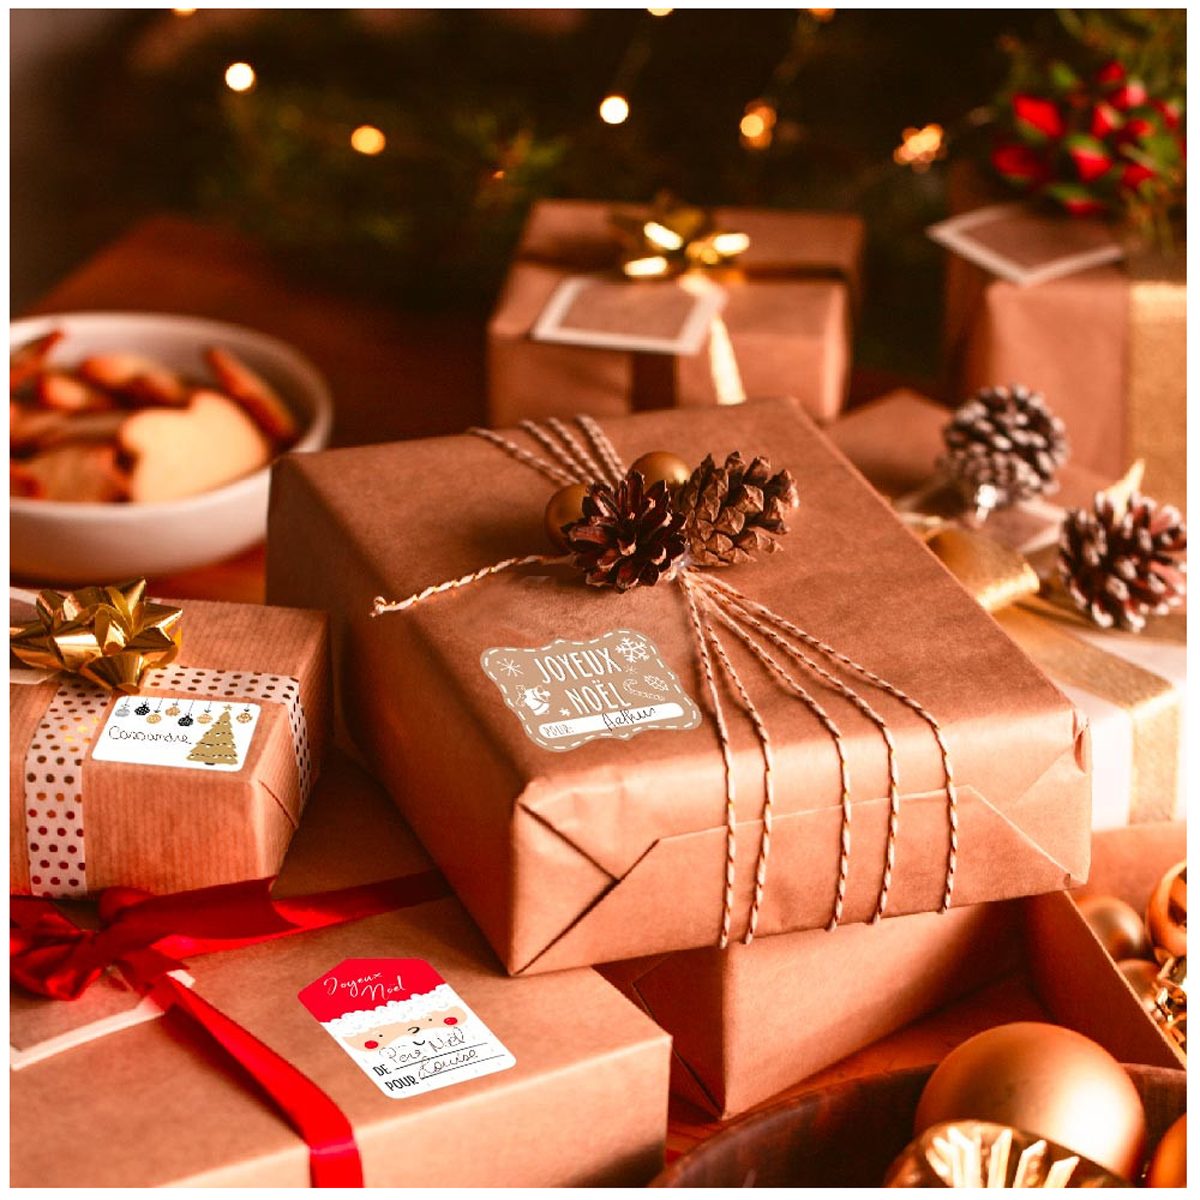 Planches mix 24 étiquettes cadeaux autocollantes Bon Natale